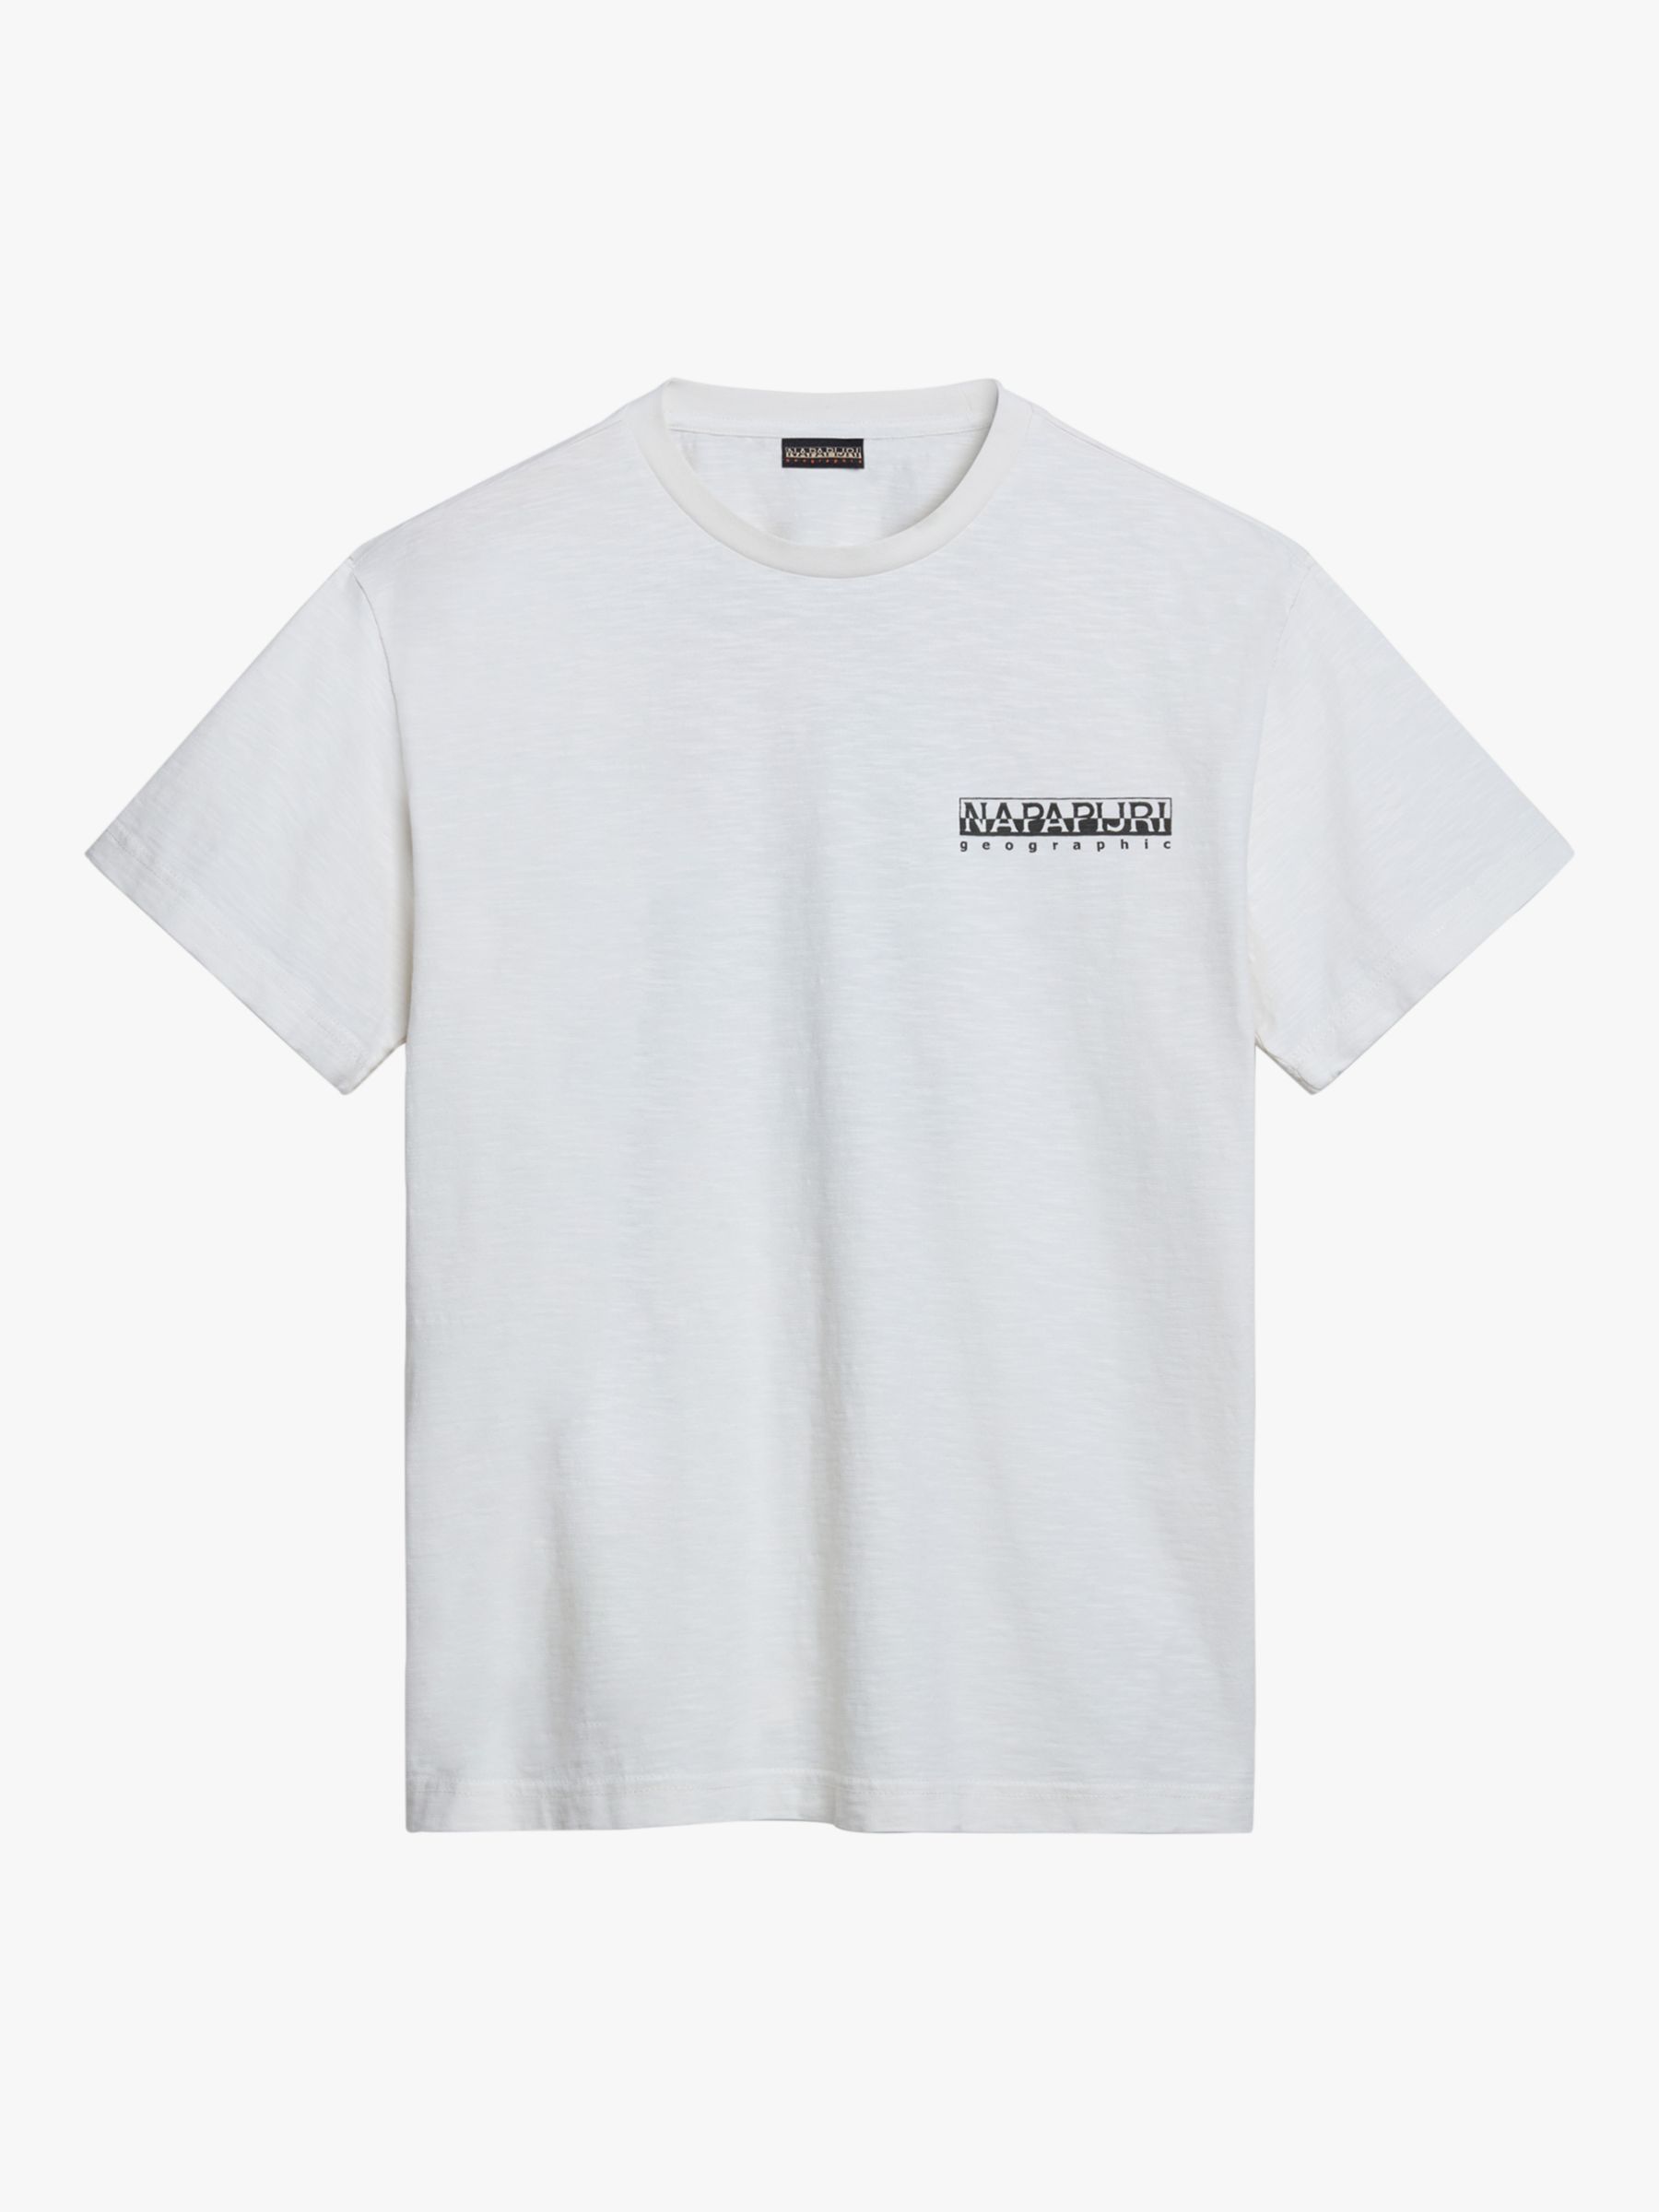 Napapijri Martre Short Sleeve T-Shirt, White/Multi, S